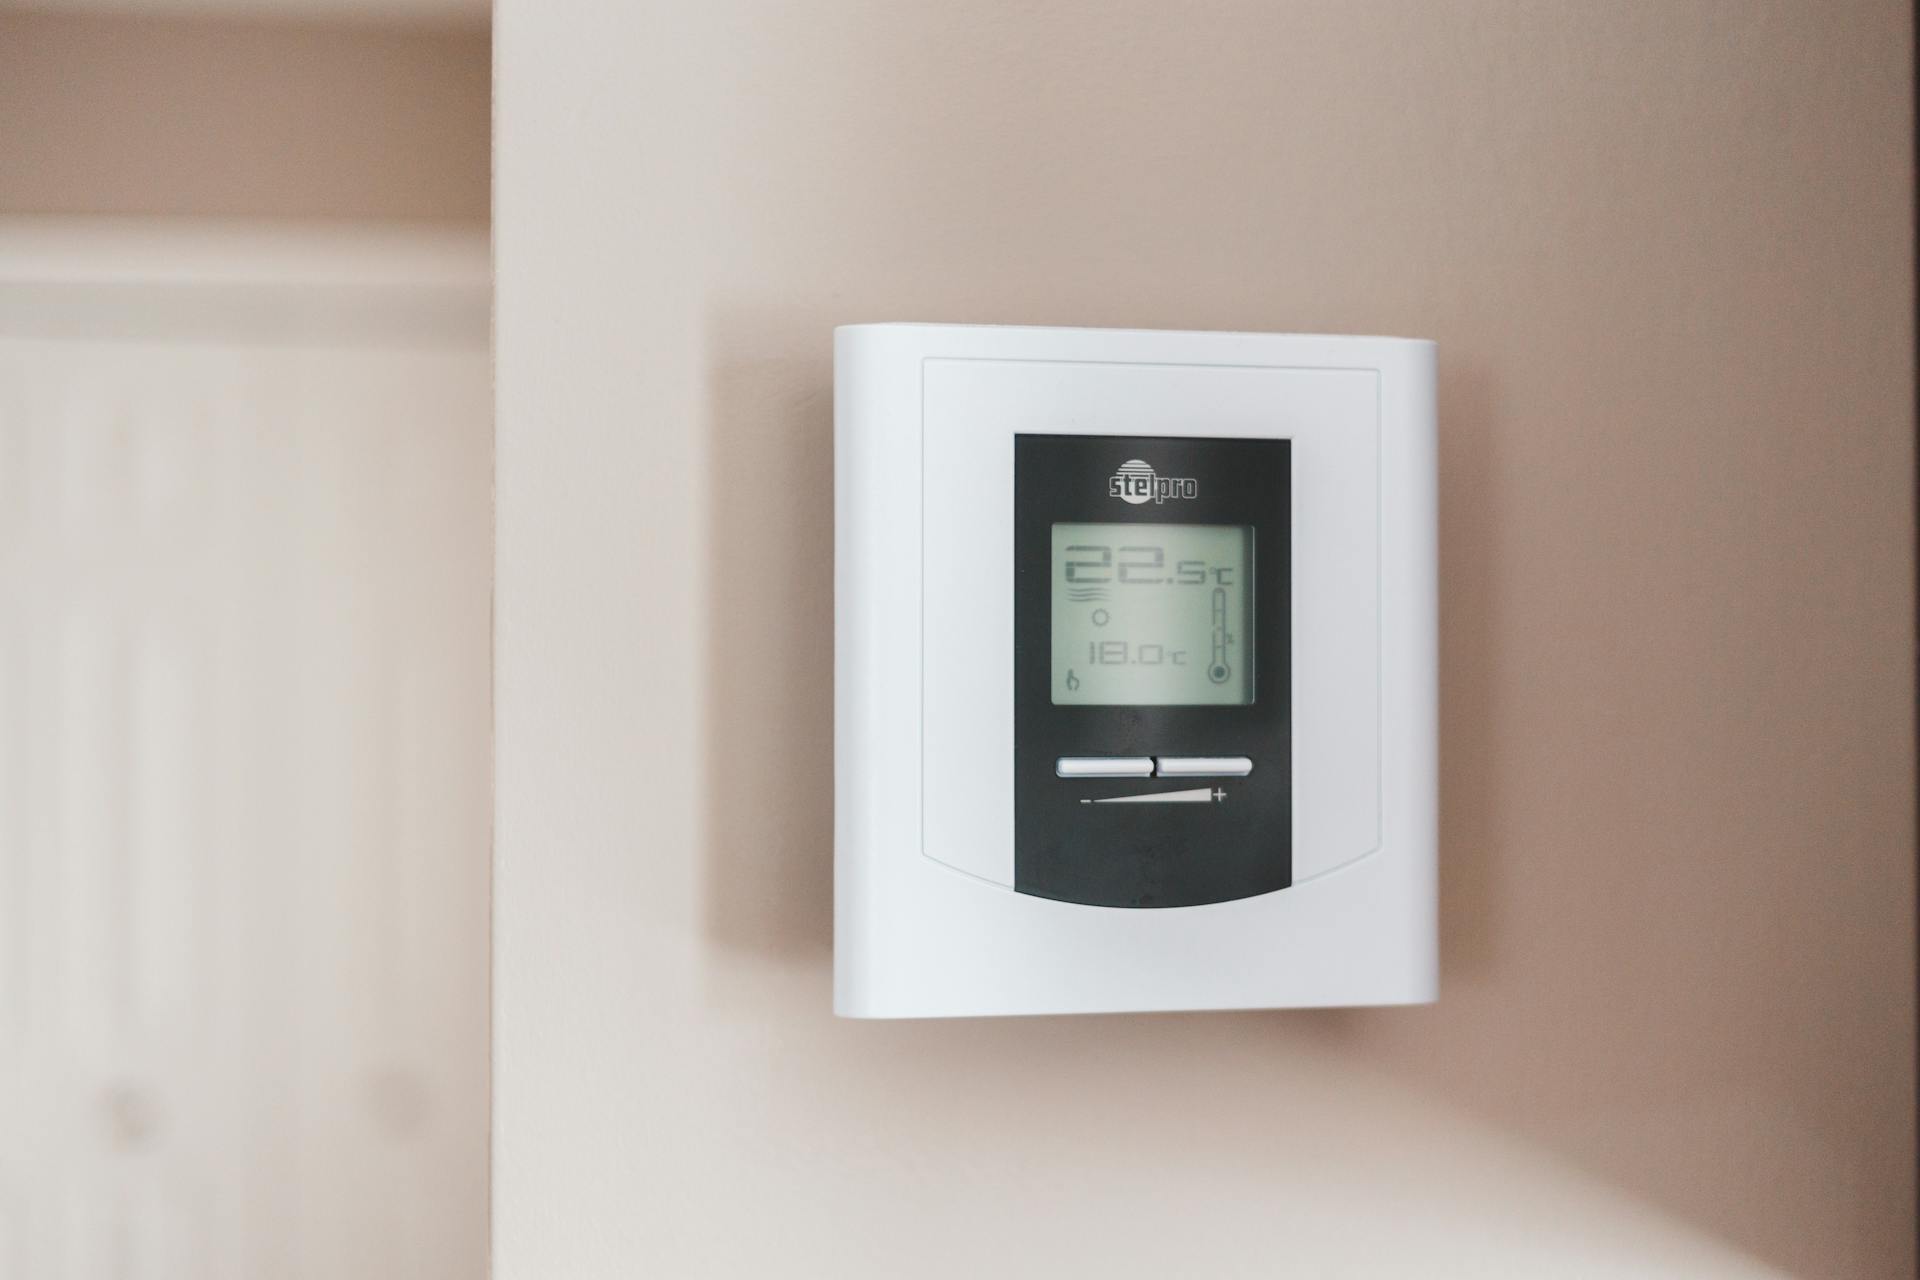 Un termostato en la pared | Fuente: Pexels